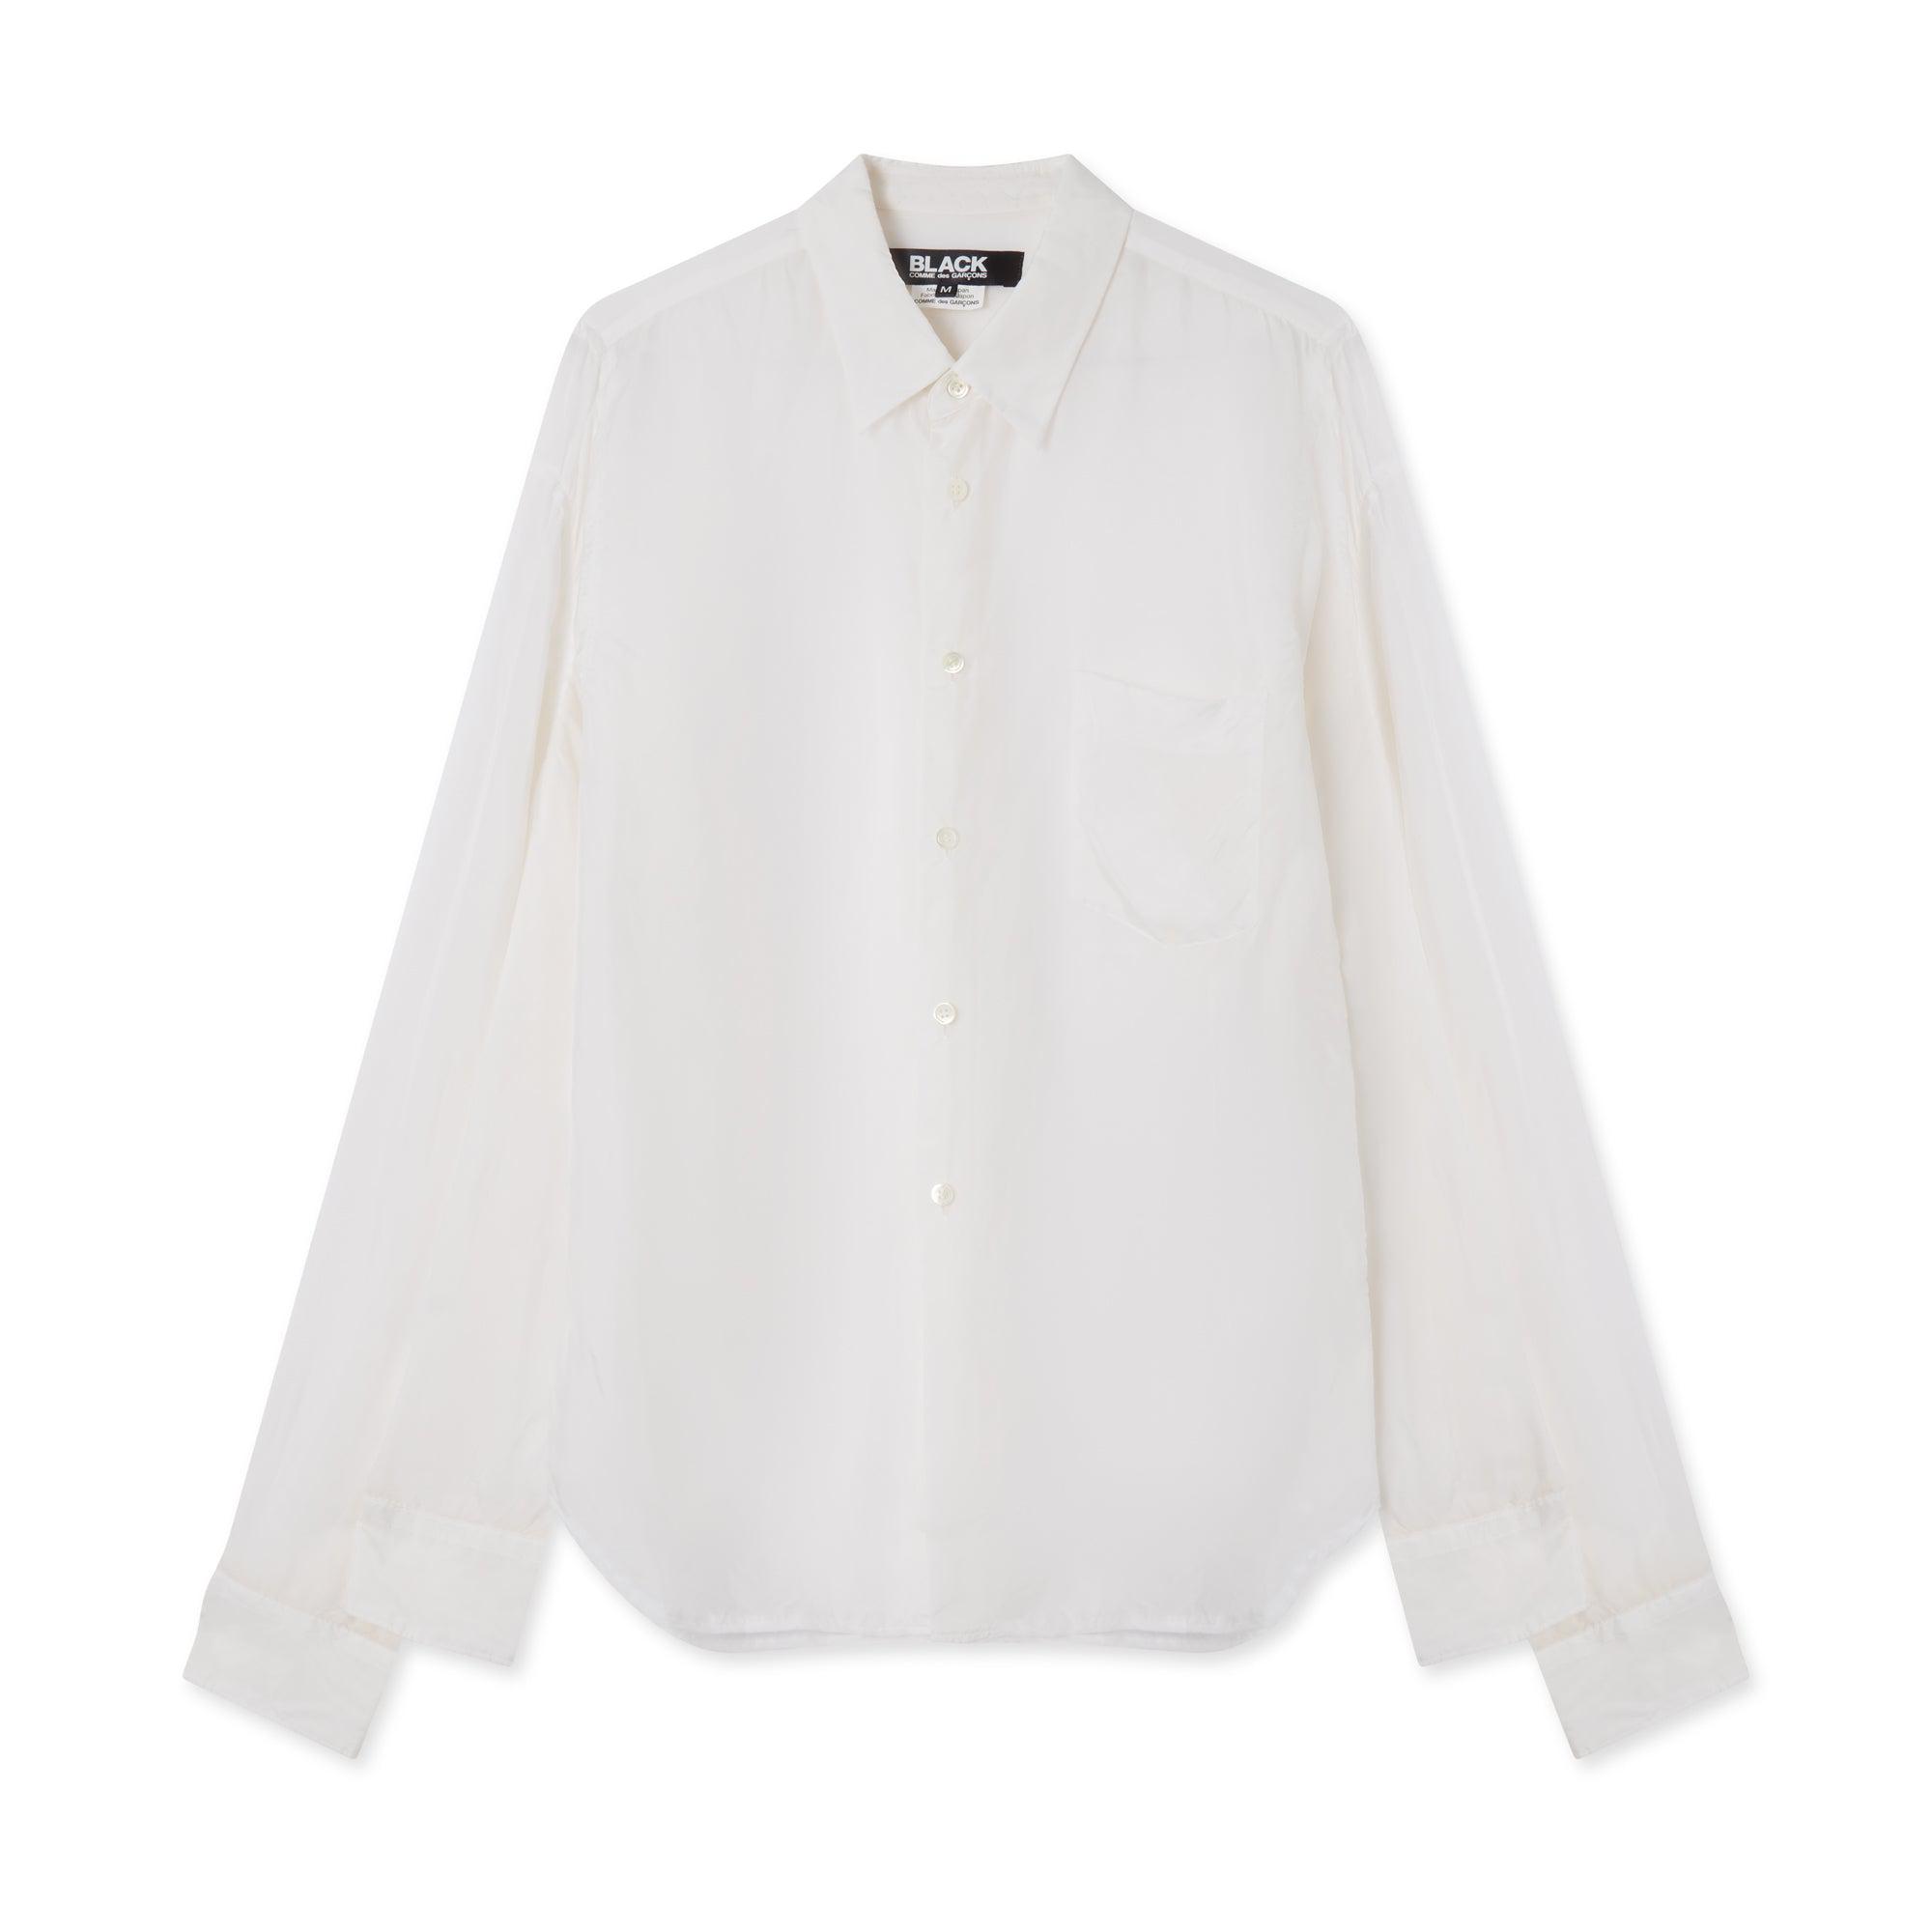 BLACK Comme des Garçons Taffeta Shirt (White) by COMME DES GARCONS